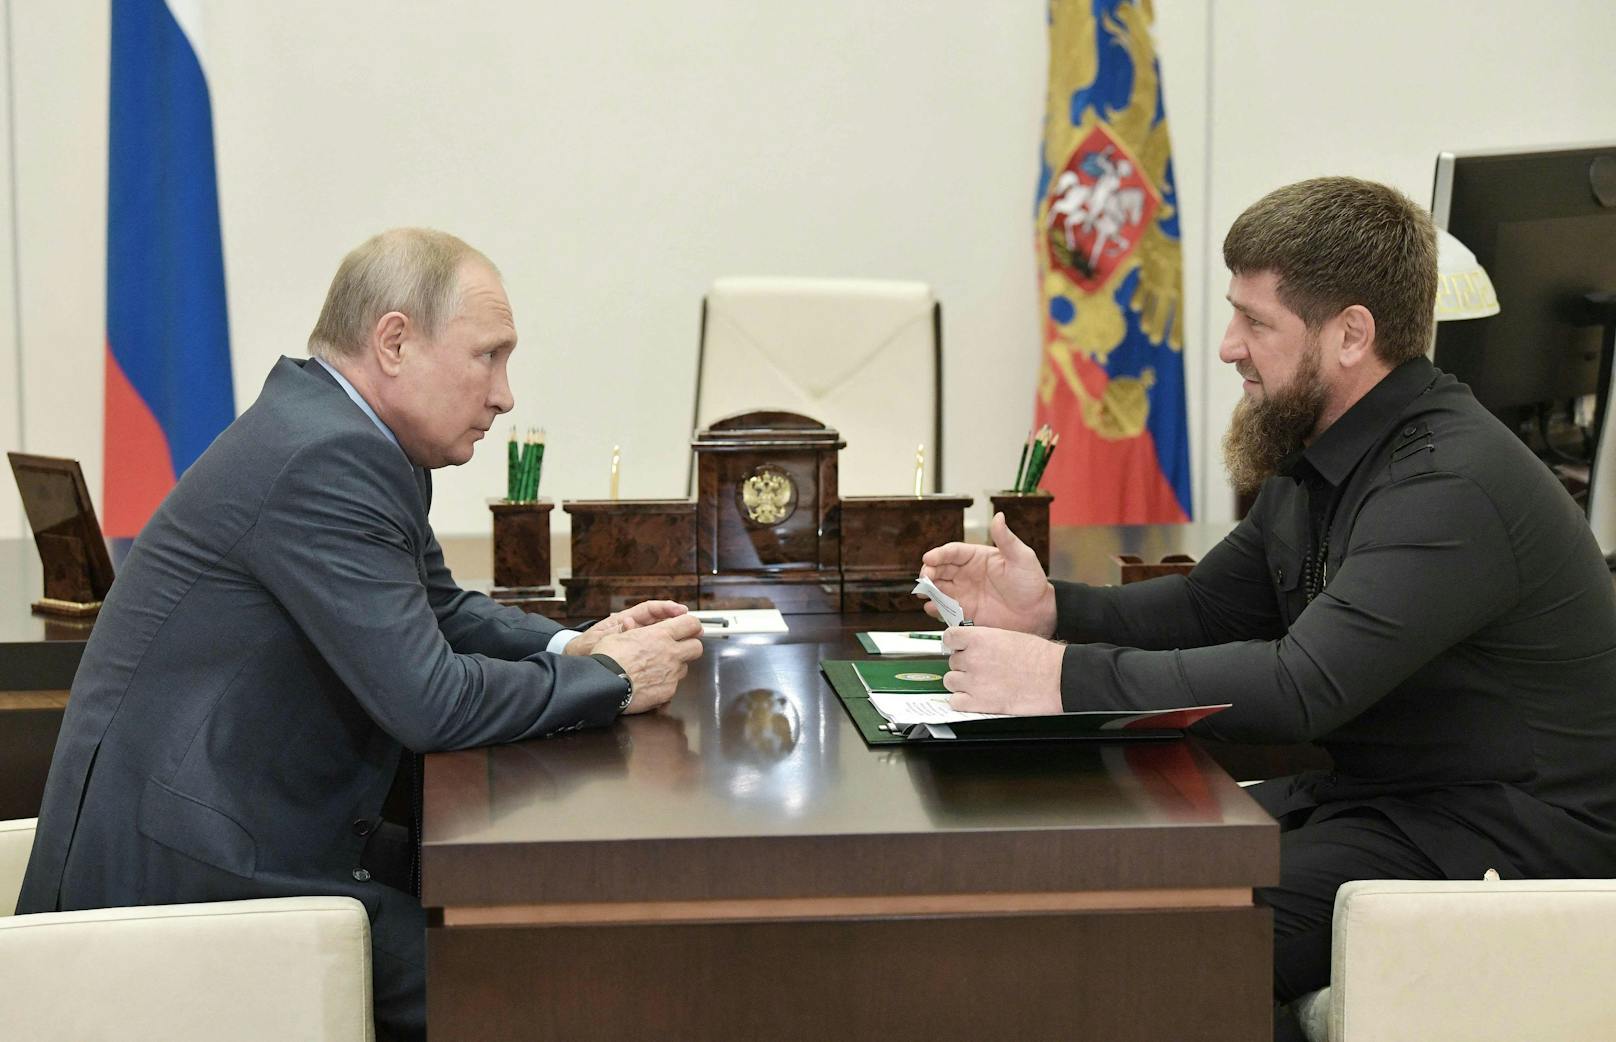 Der russische Präsident Wladimir Putin im Gespräch mit dem tschetschenischen Machthaber und Vertrauten Ramsan Kadyrow. (Archivbild)